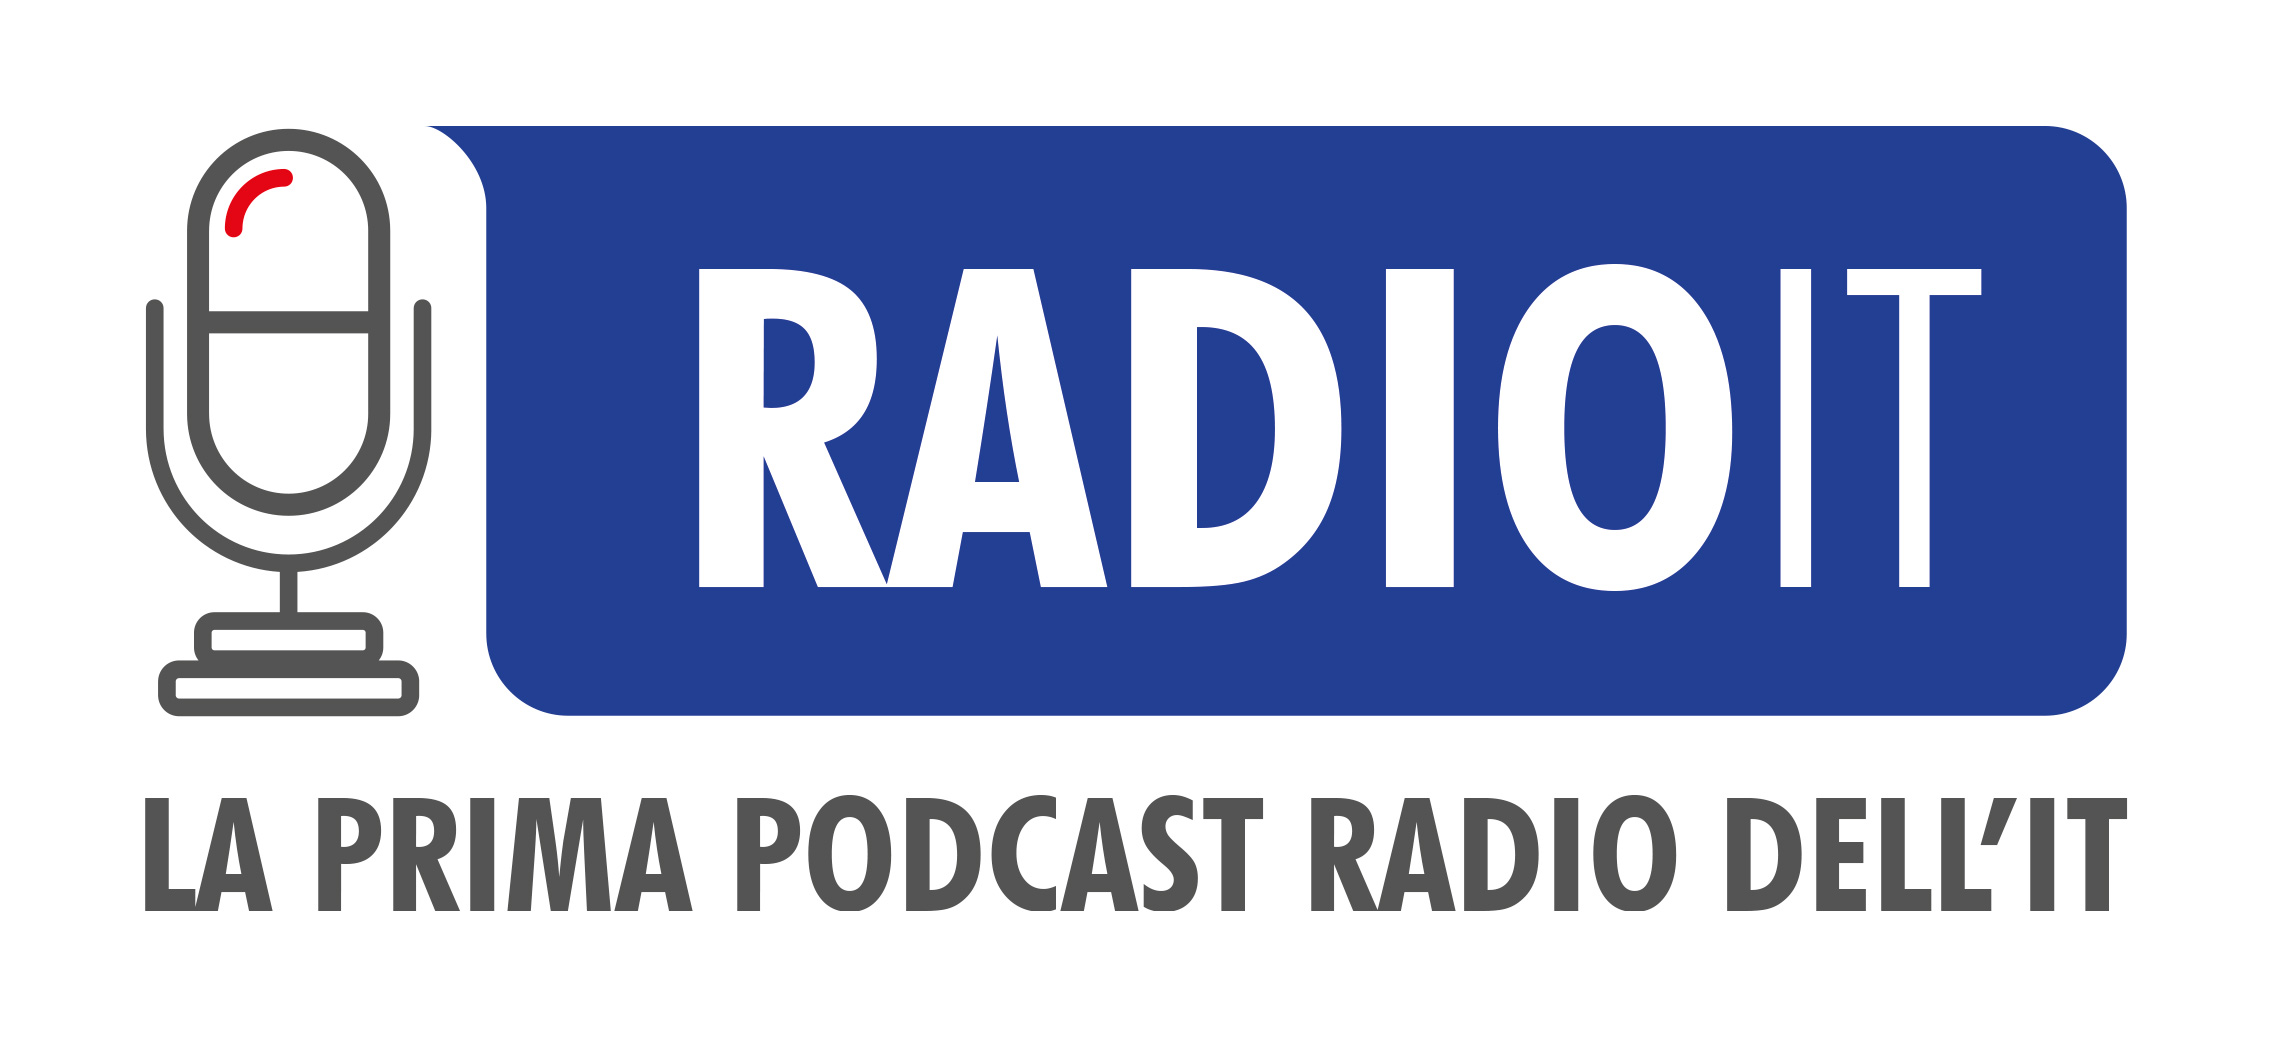 Nasce RADIO IT, la prima podcast radio del settore IT 